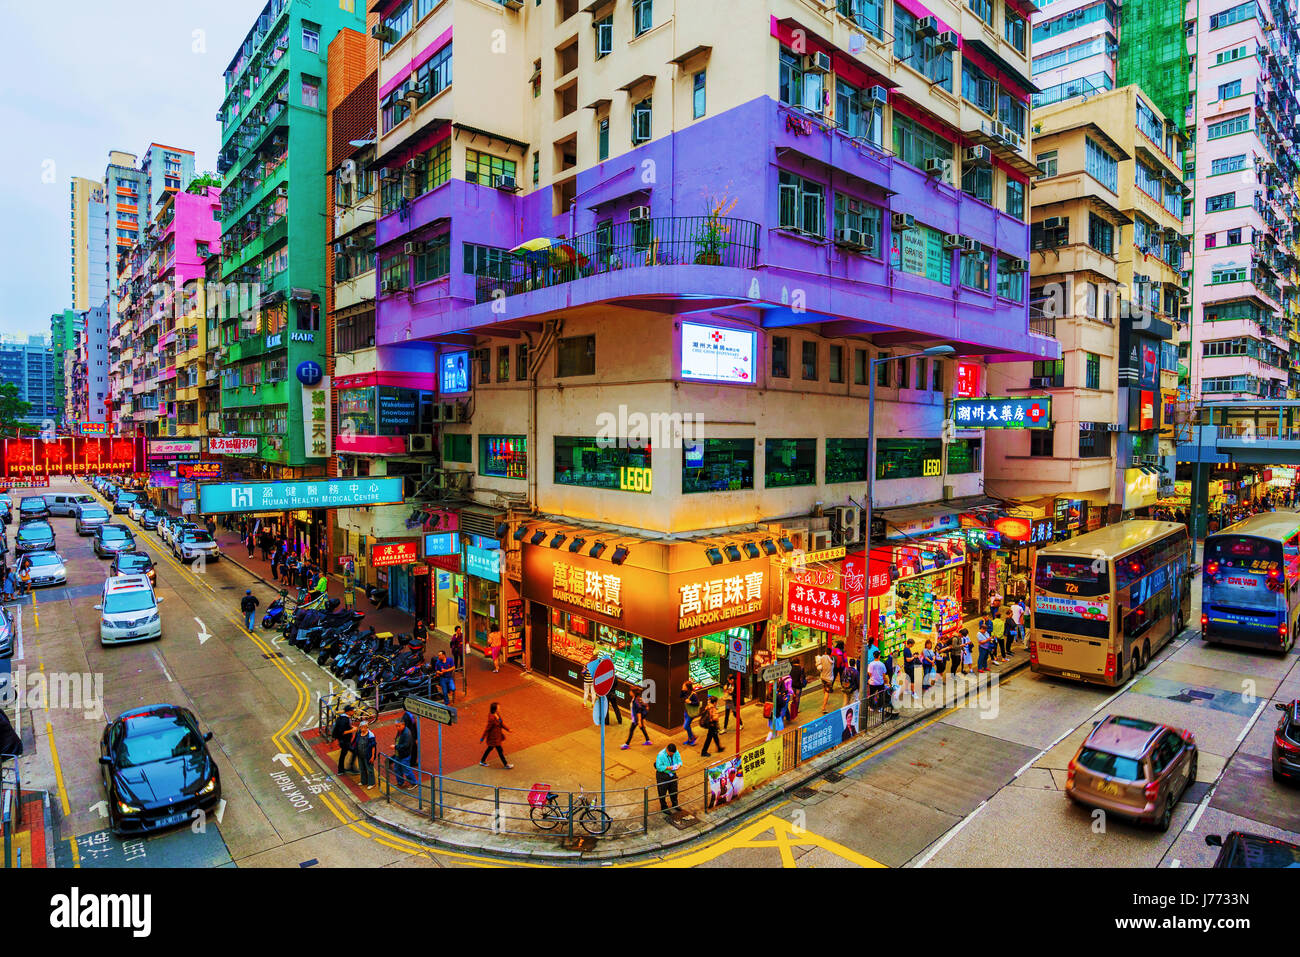 HONG KONG, CINA - 24 Aprile: si tratta di un punto di vista di architettura e negozi in corrispondenza di un incrocio occupato in Mong Kok area su Aprile 24, 2017 a Hong Kong Foto Stock